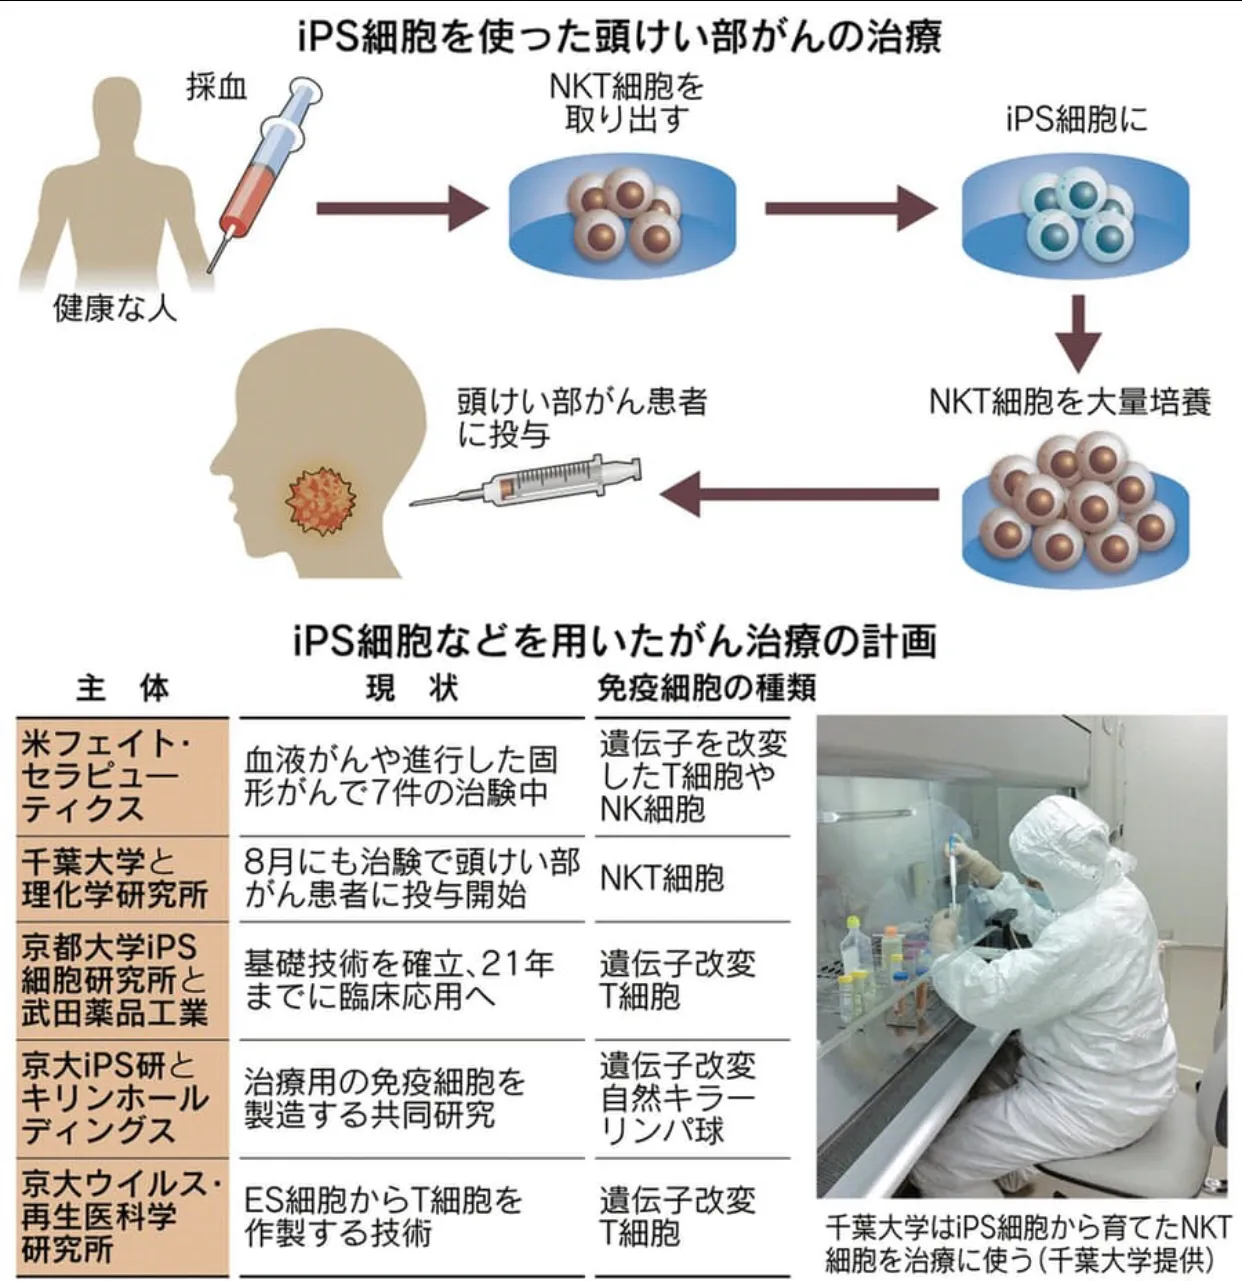 日本开发干细胞治疗技术、制造免疫细胞应用于治疗新冠病毒